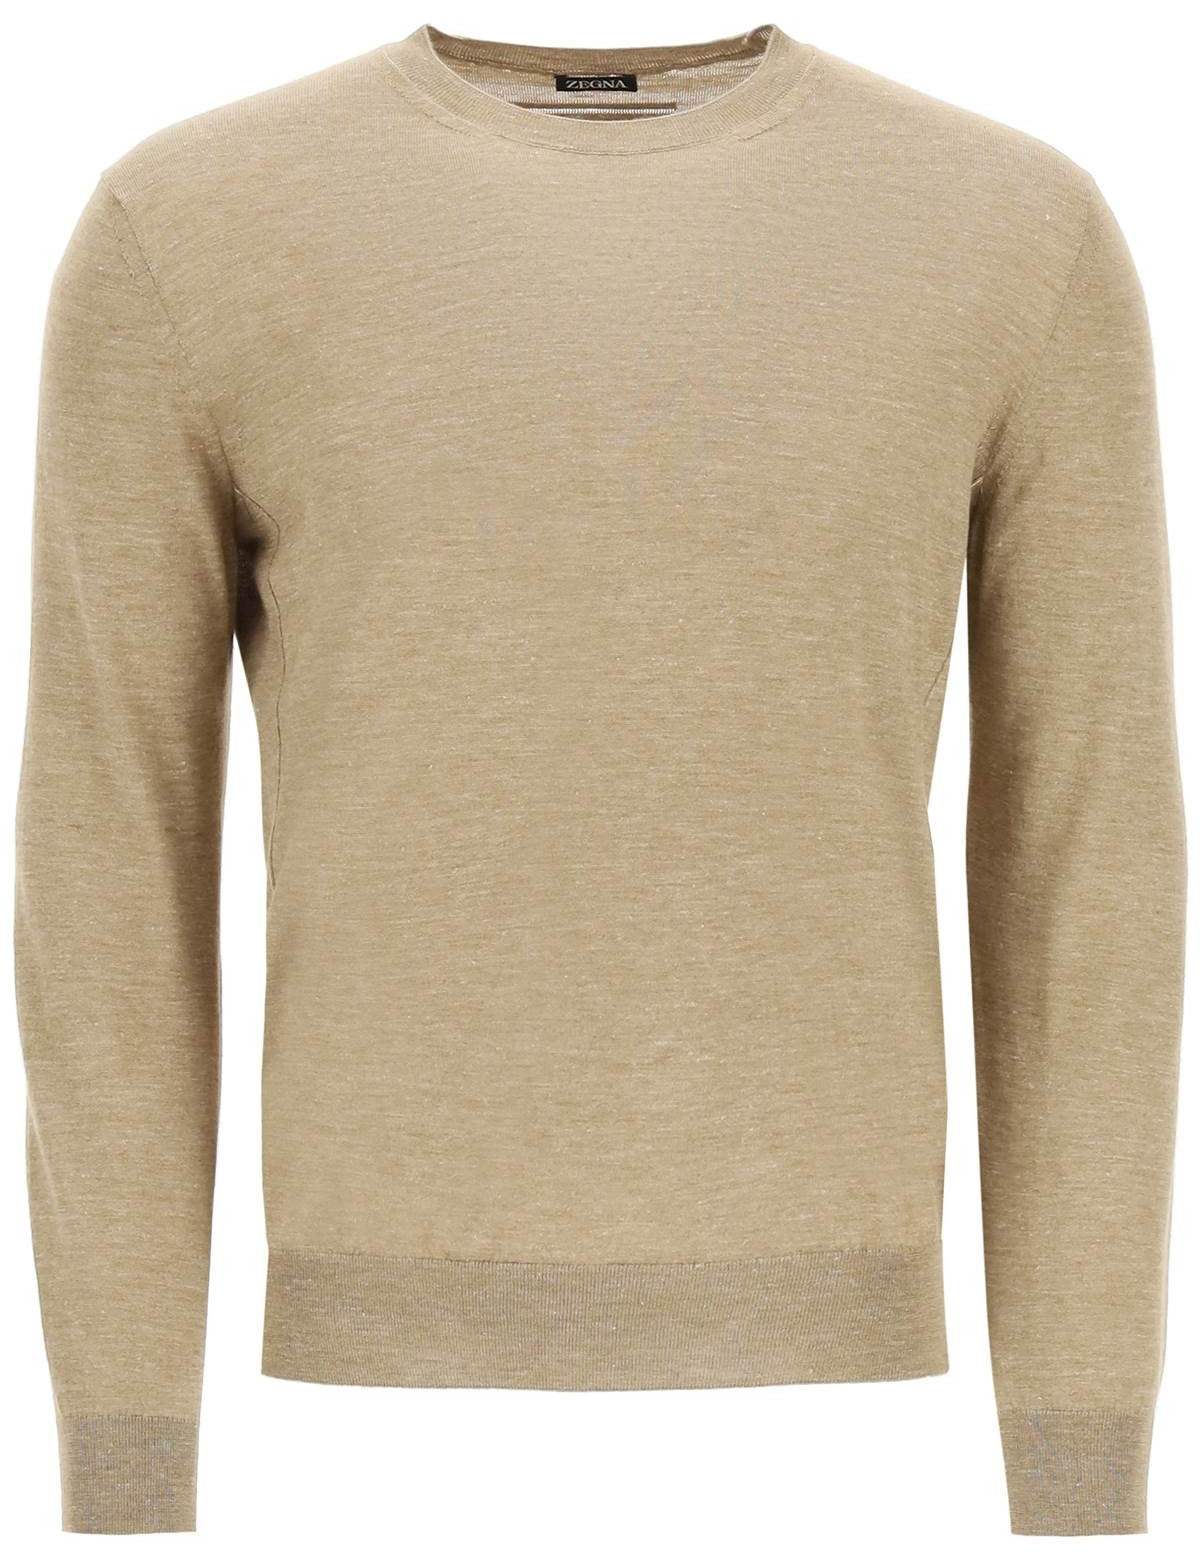 zegna-lightweight-silk-cashmere-and-linen-sweater.jpg